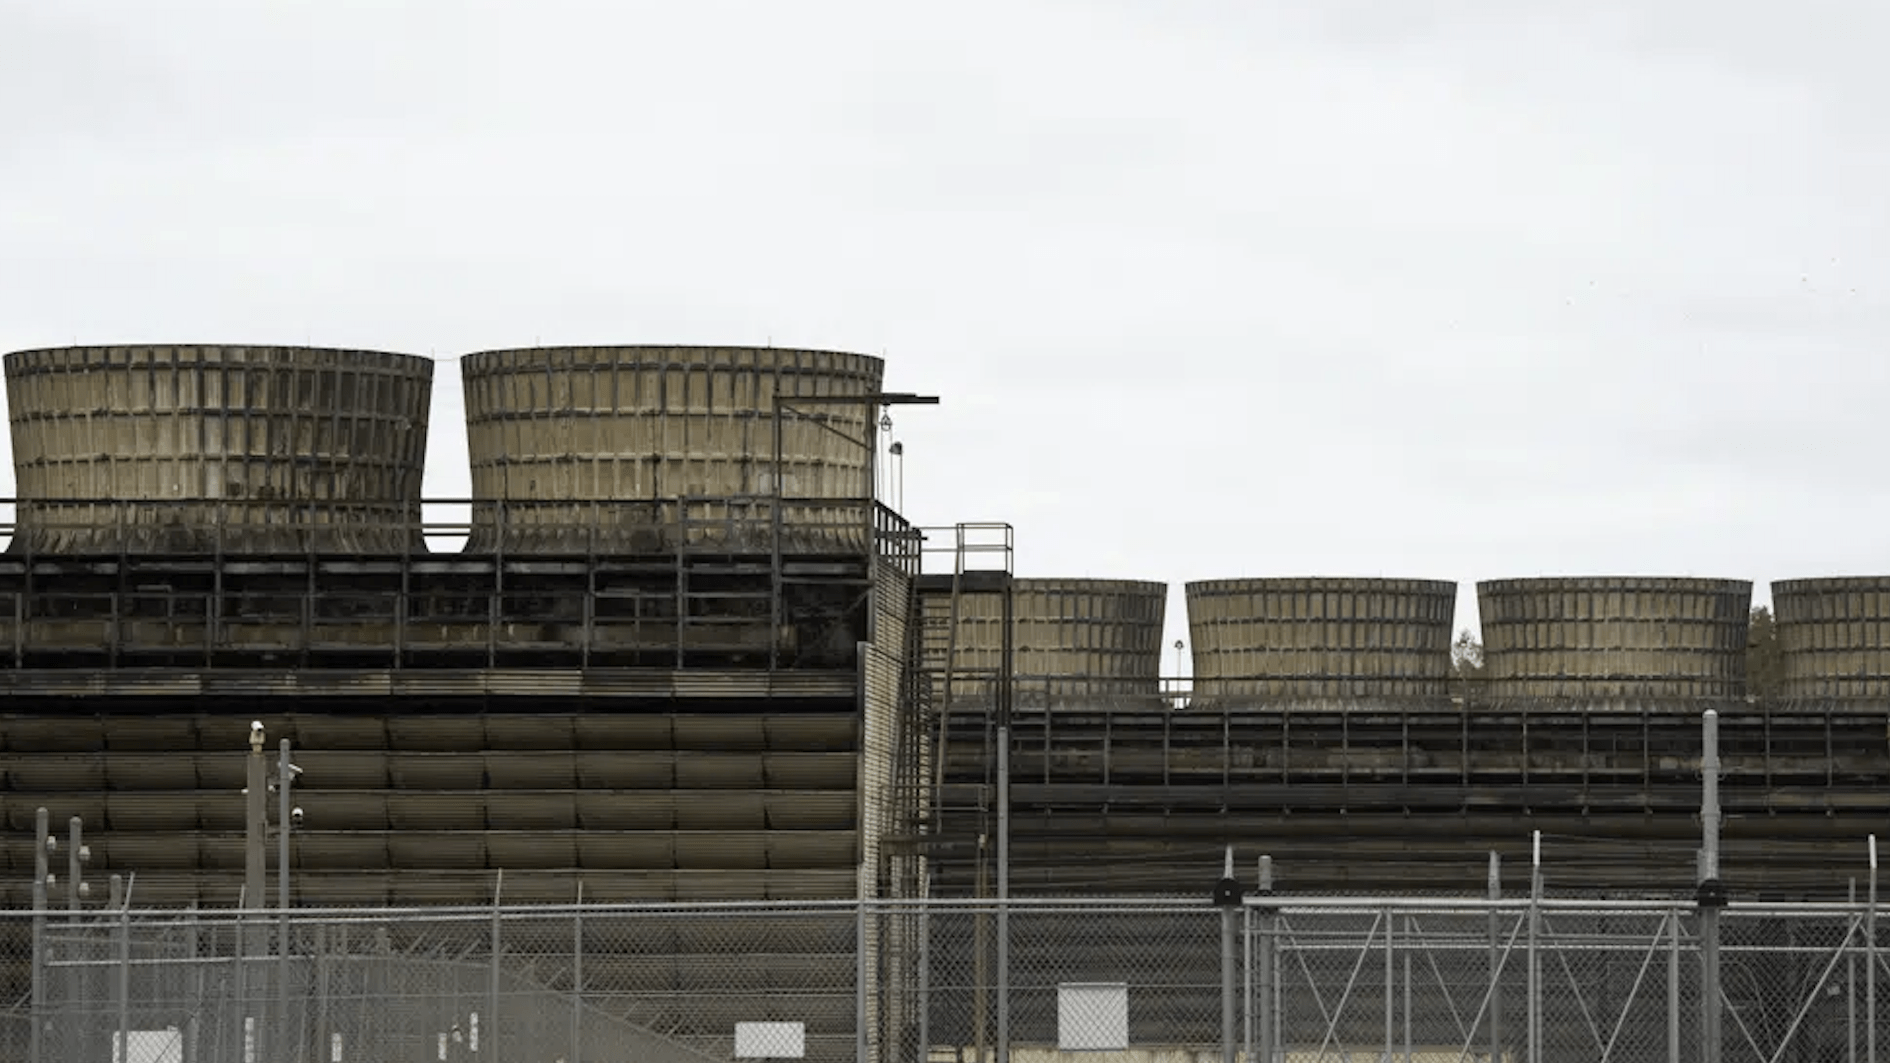 经核查，明尼苏达州的一个核电站确实是发生了放射性废水泄露，但没流出核电站范围，该州污染控制局和核管理委员会表示不会对公众造成危害。 废水完全控制在现场，没有在设施之外或任何当地饮用水中检测到。 其次，涉事能源公司和当局并没有故意隐瞒。